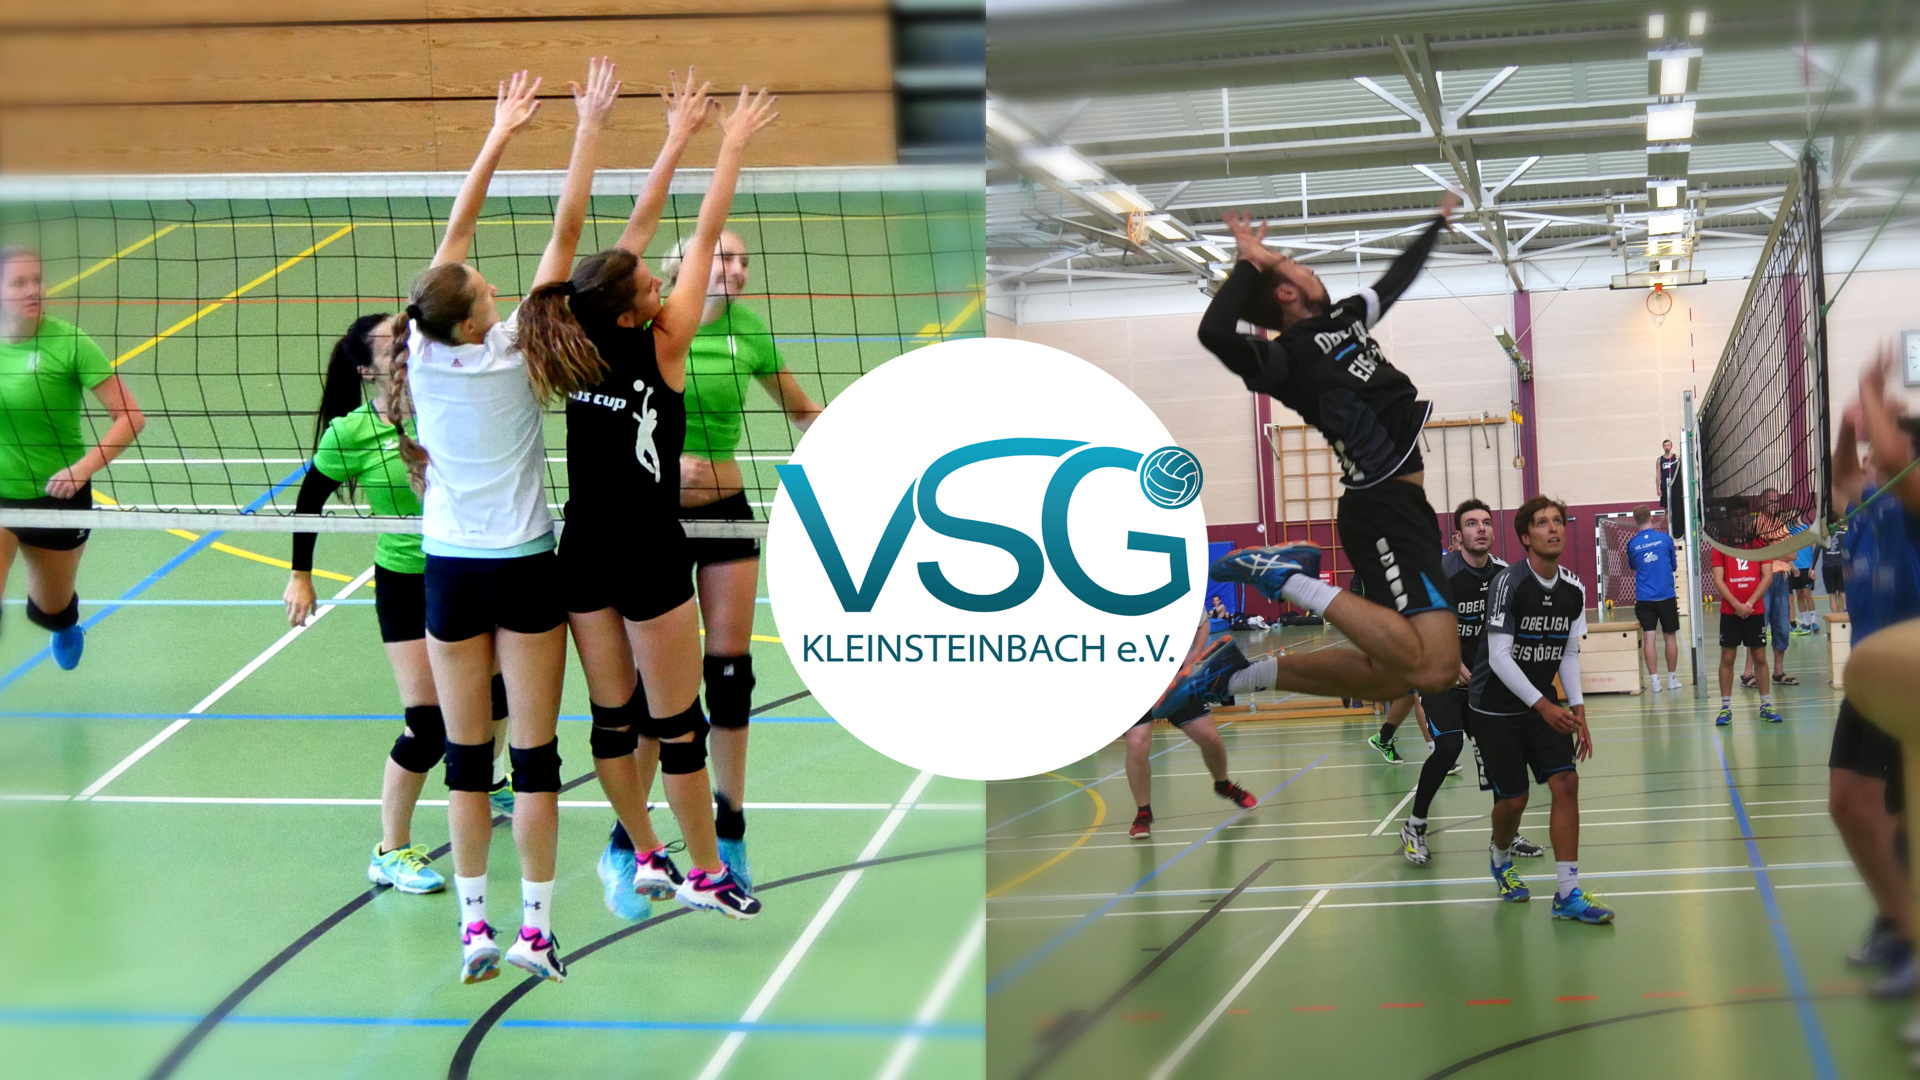 VSG Kleinsteinbach veranstaltet 2019 wieder Saisonvorbereitungsturniere